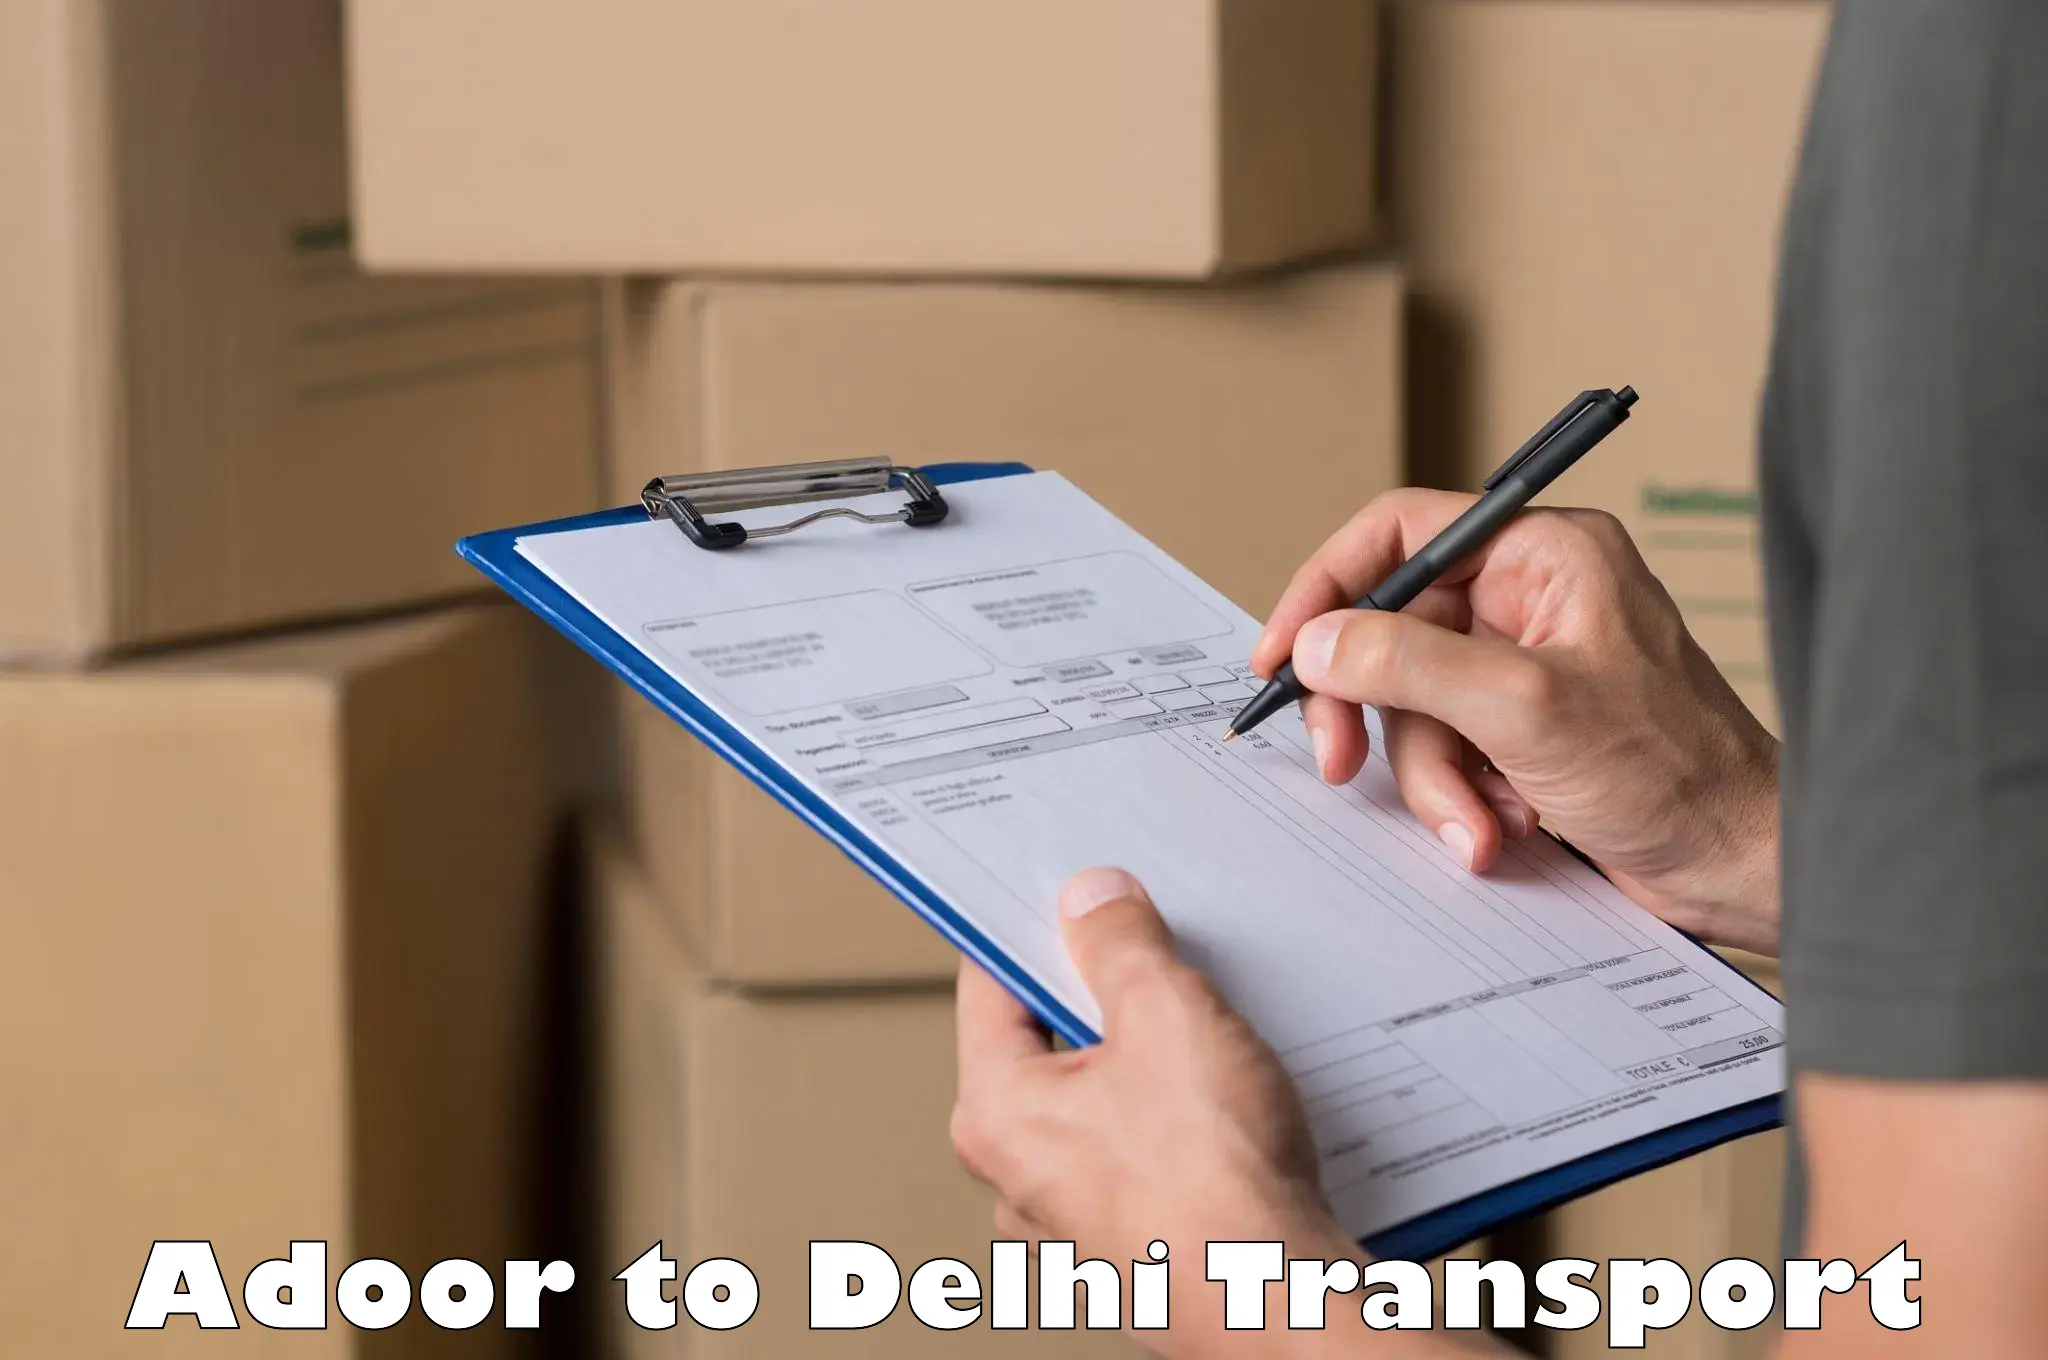 Package delivery services Adoor to Kalkaji